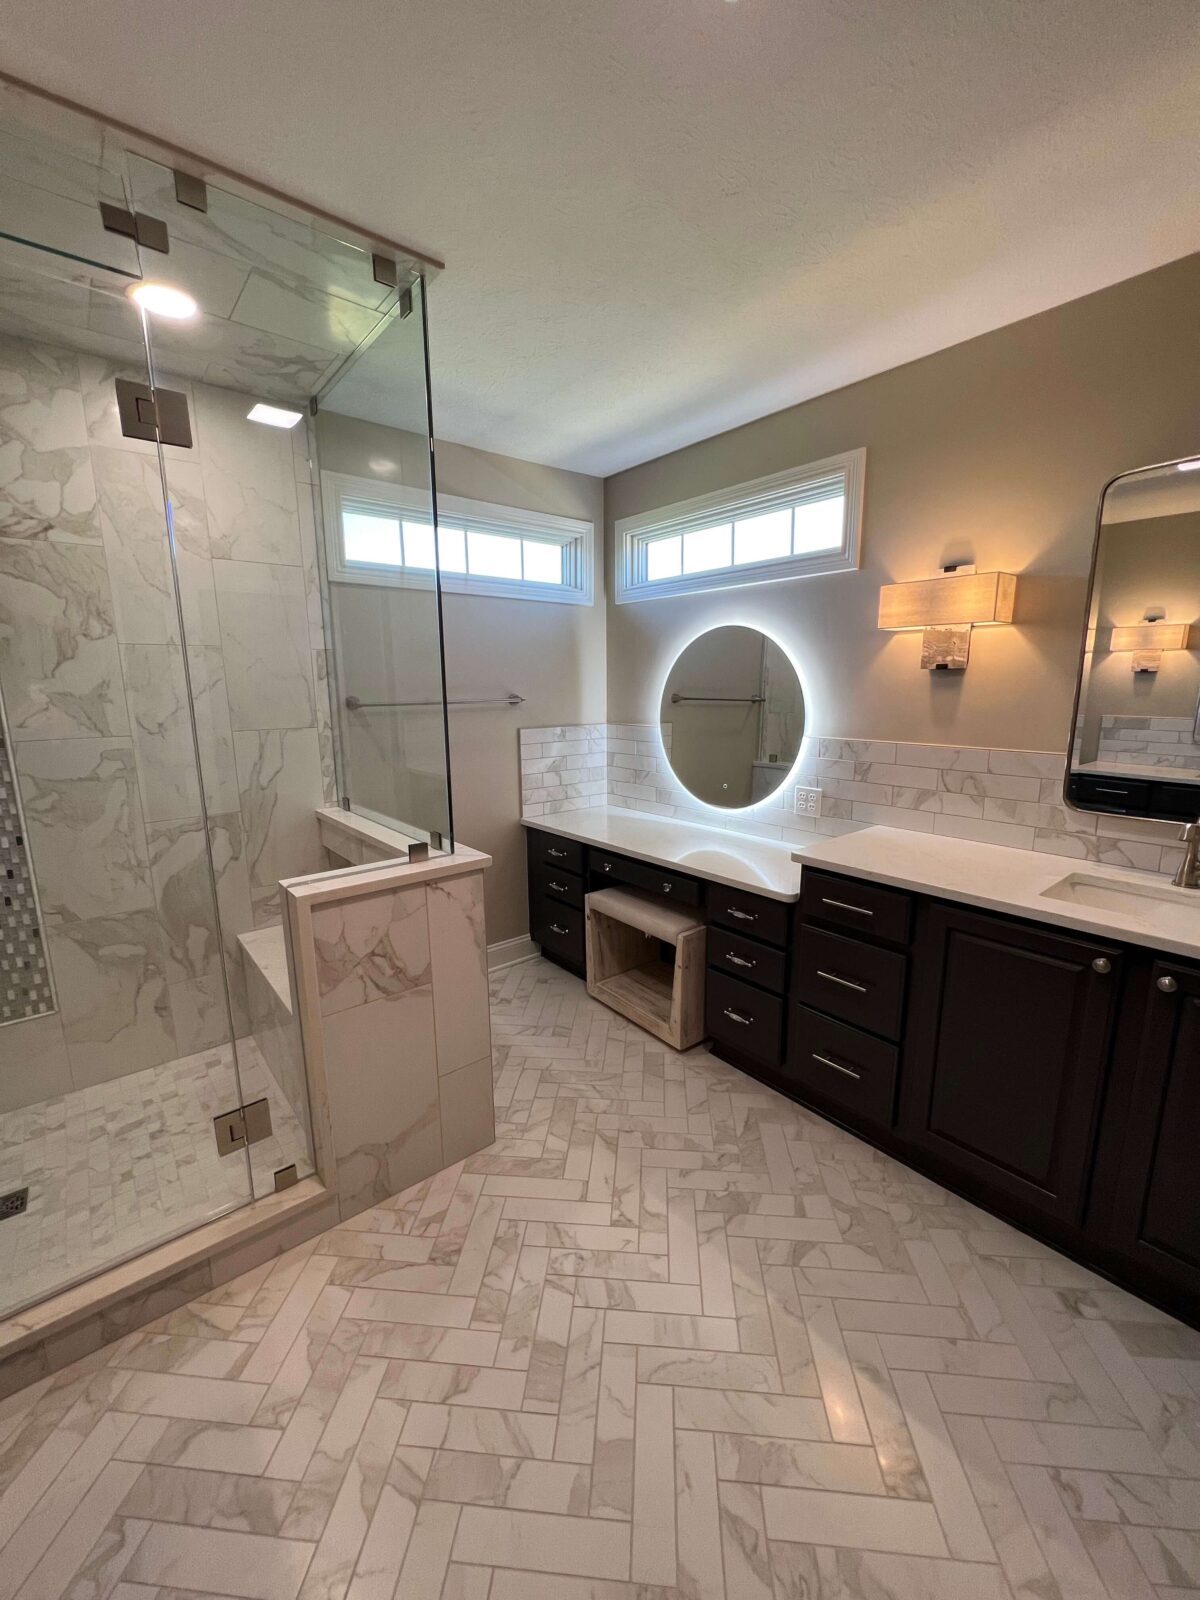 Bathroom Design & Remodeling Tips & Advice